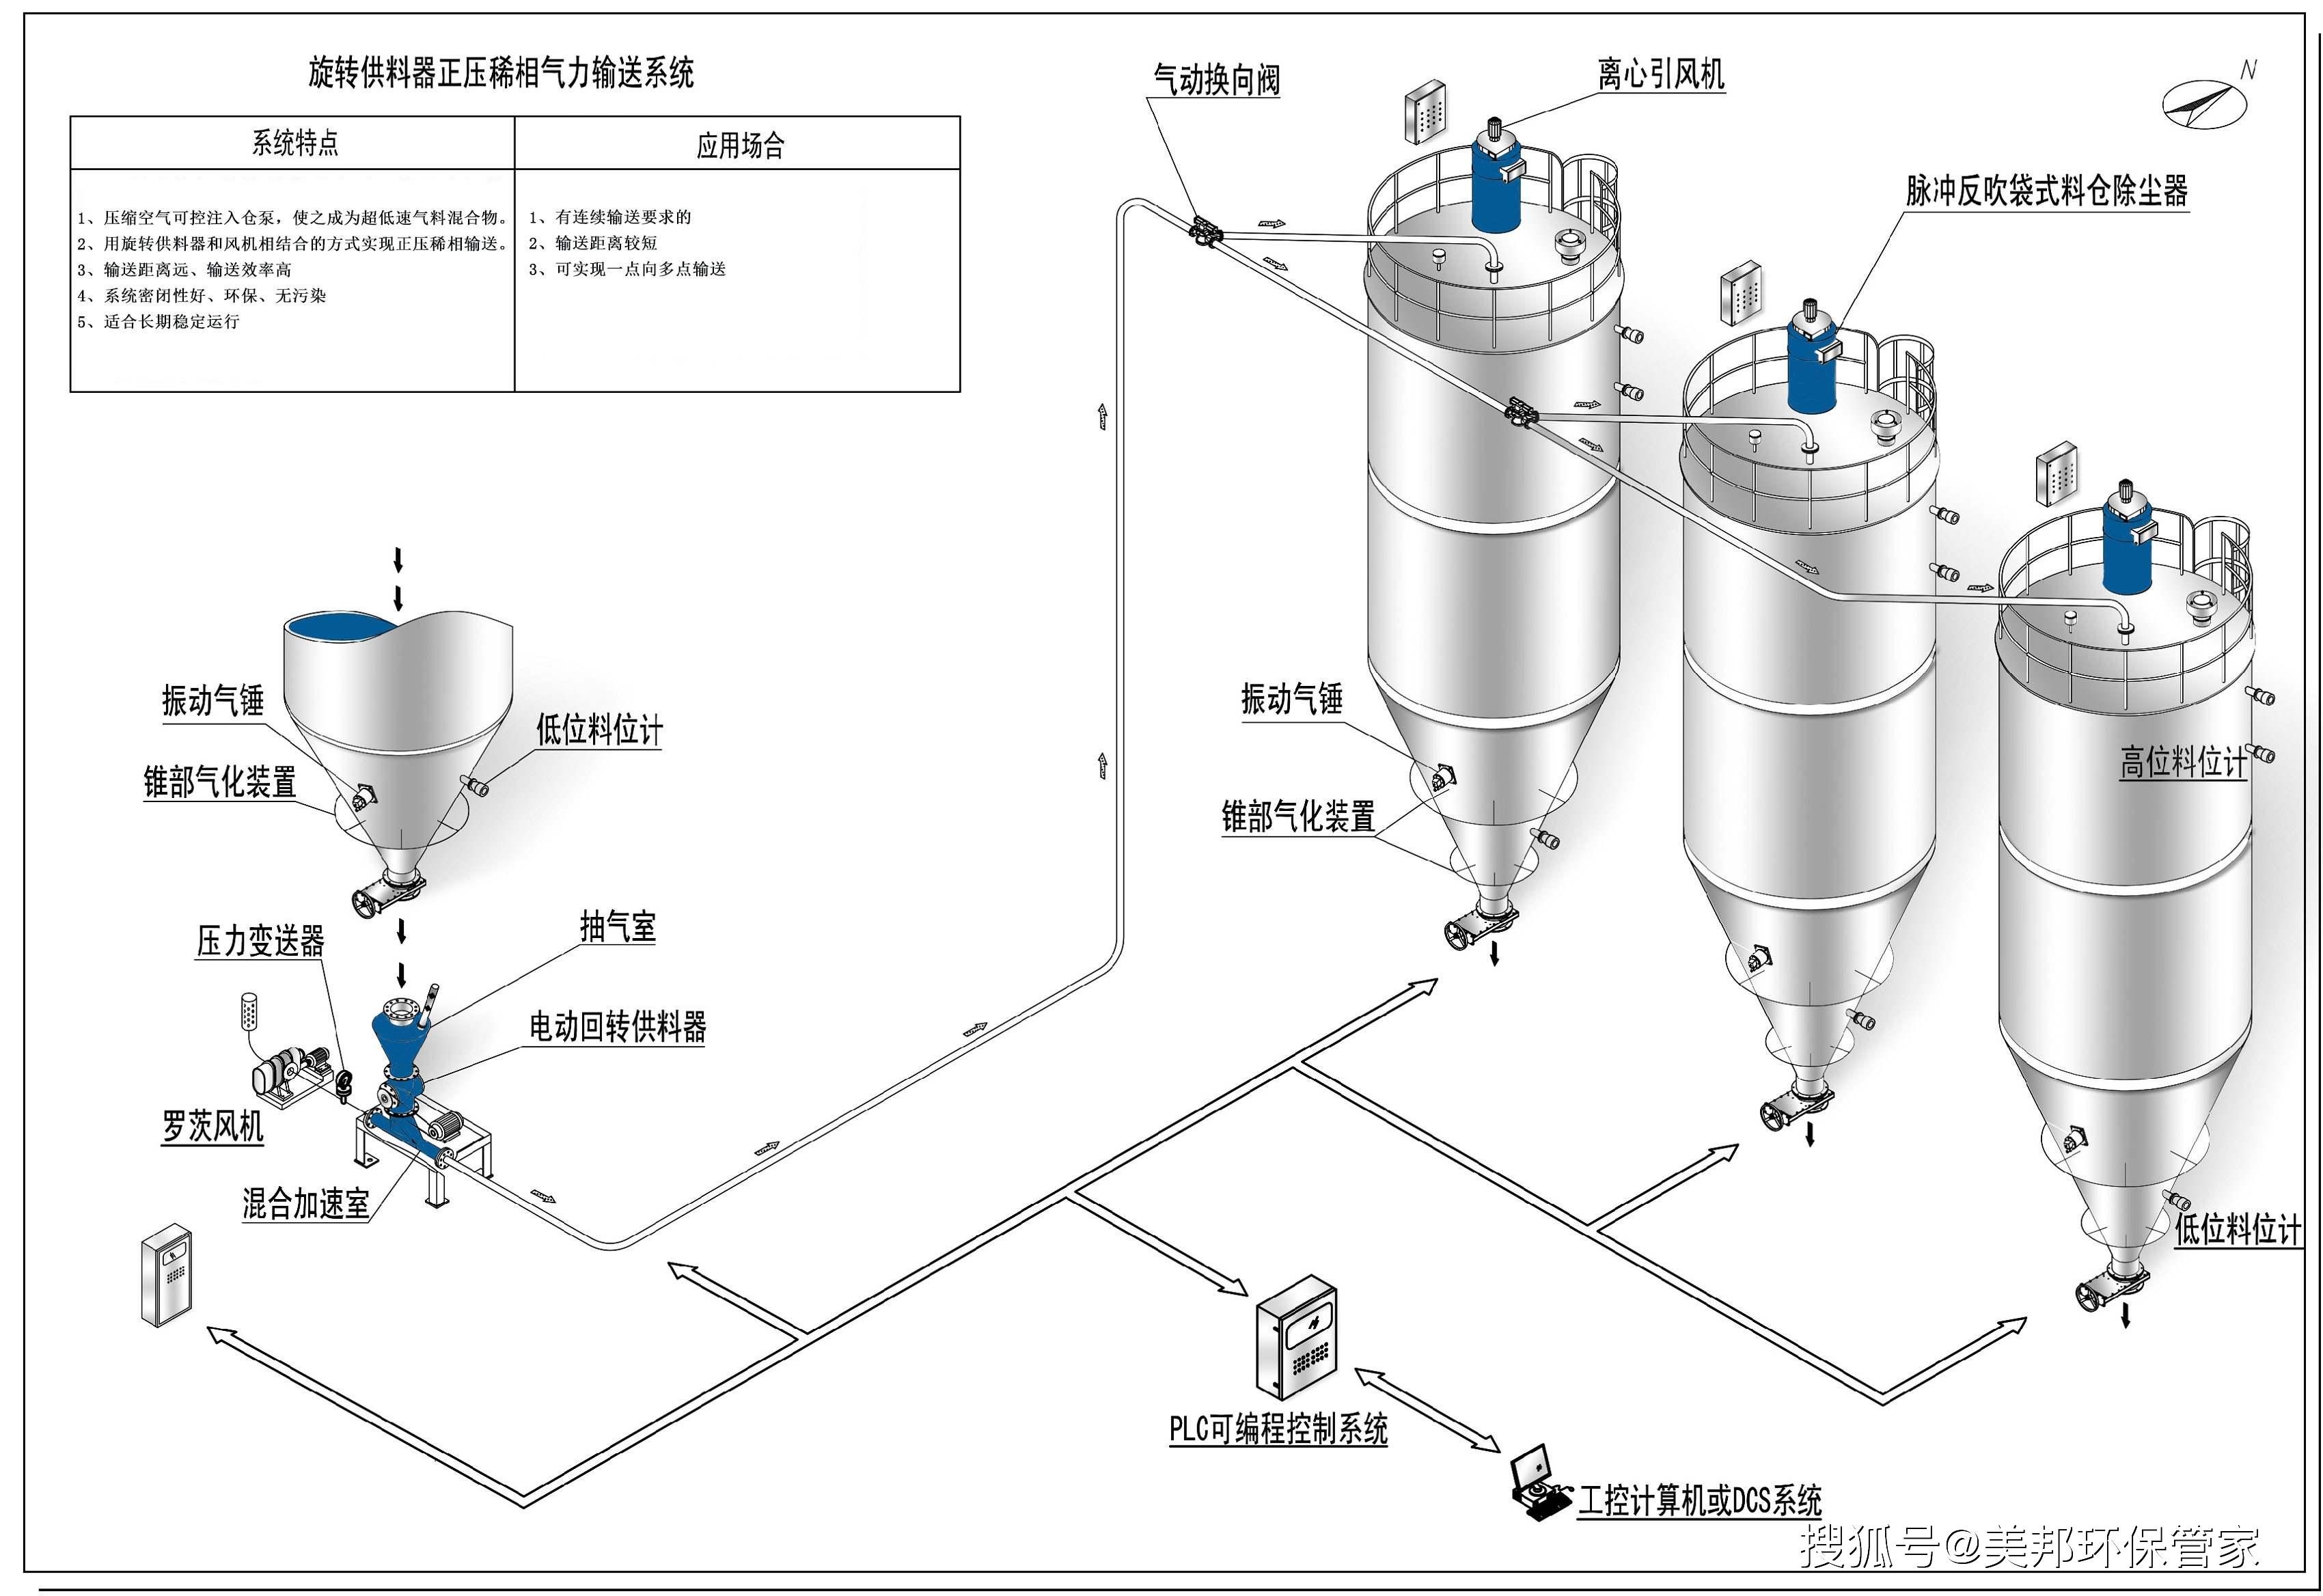 系统正压密相输送和低压稀相气力输送都是基于力量射流泵的原理工作的